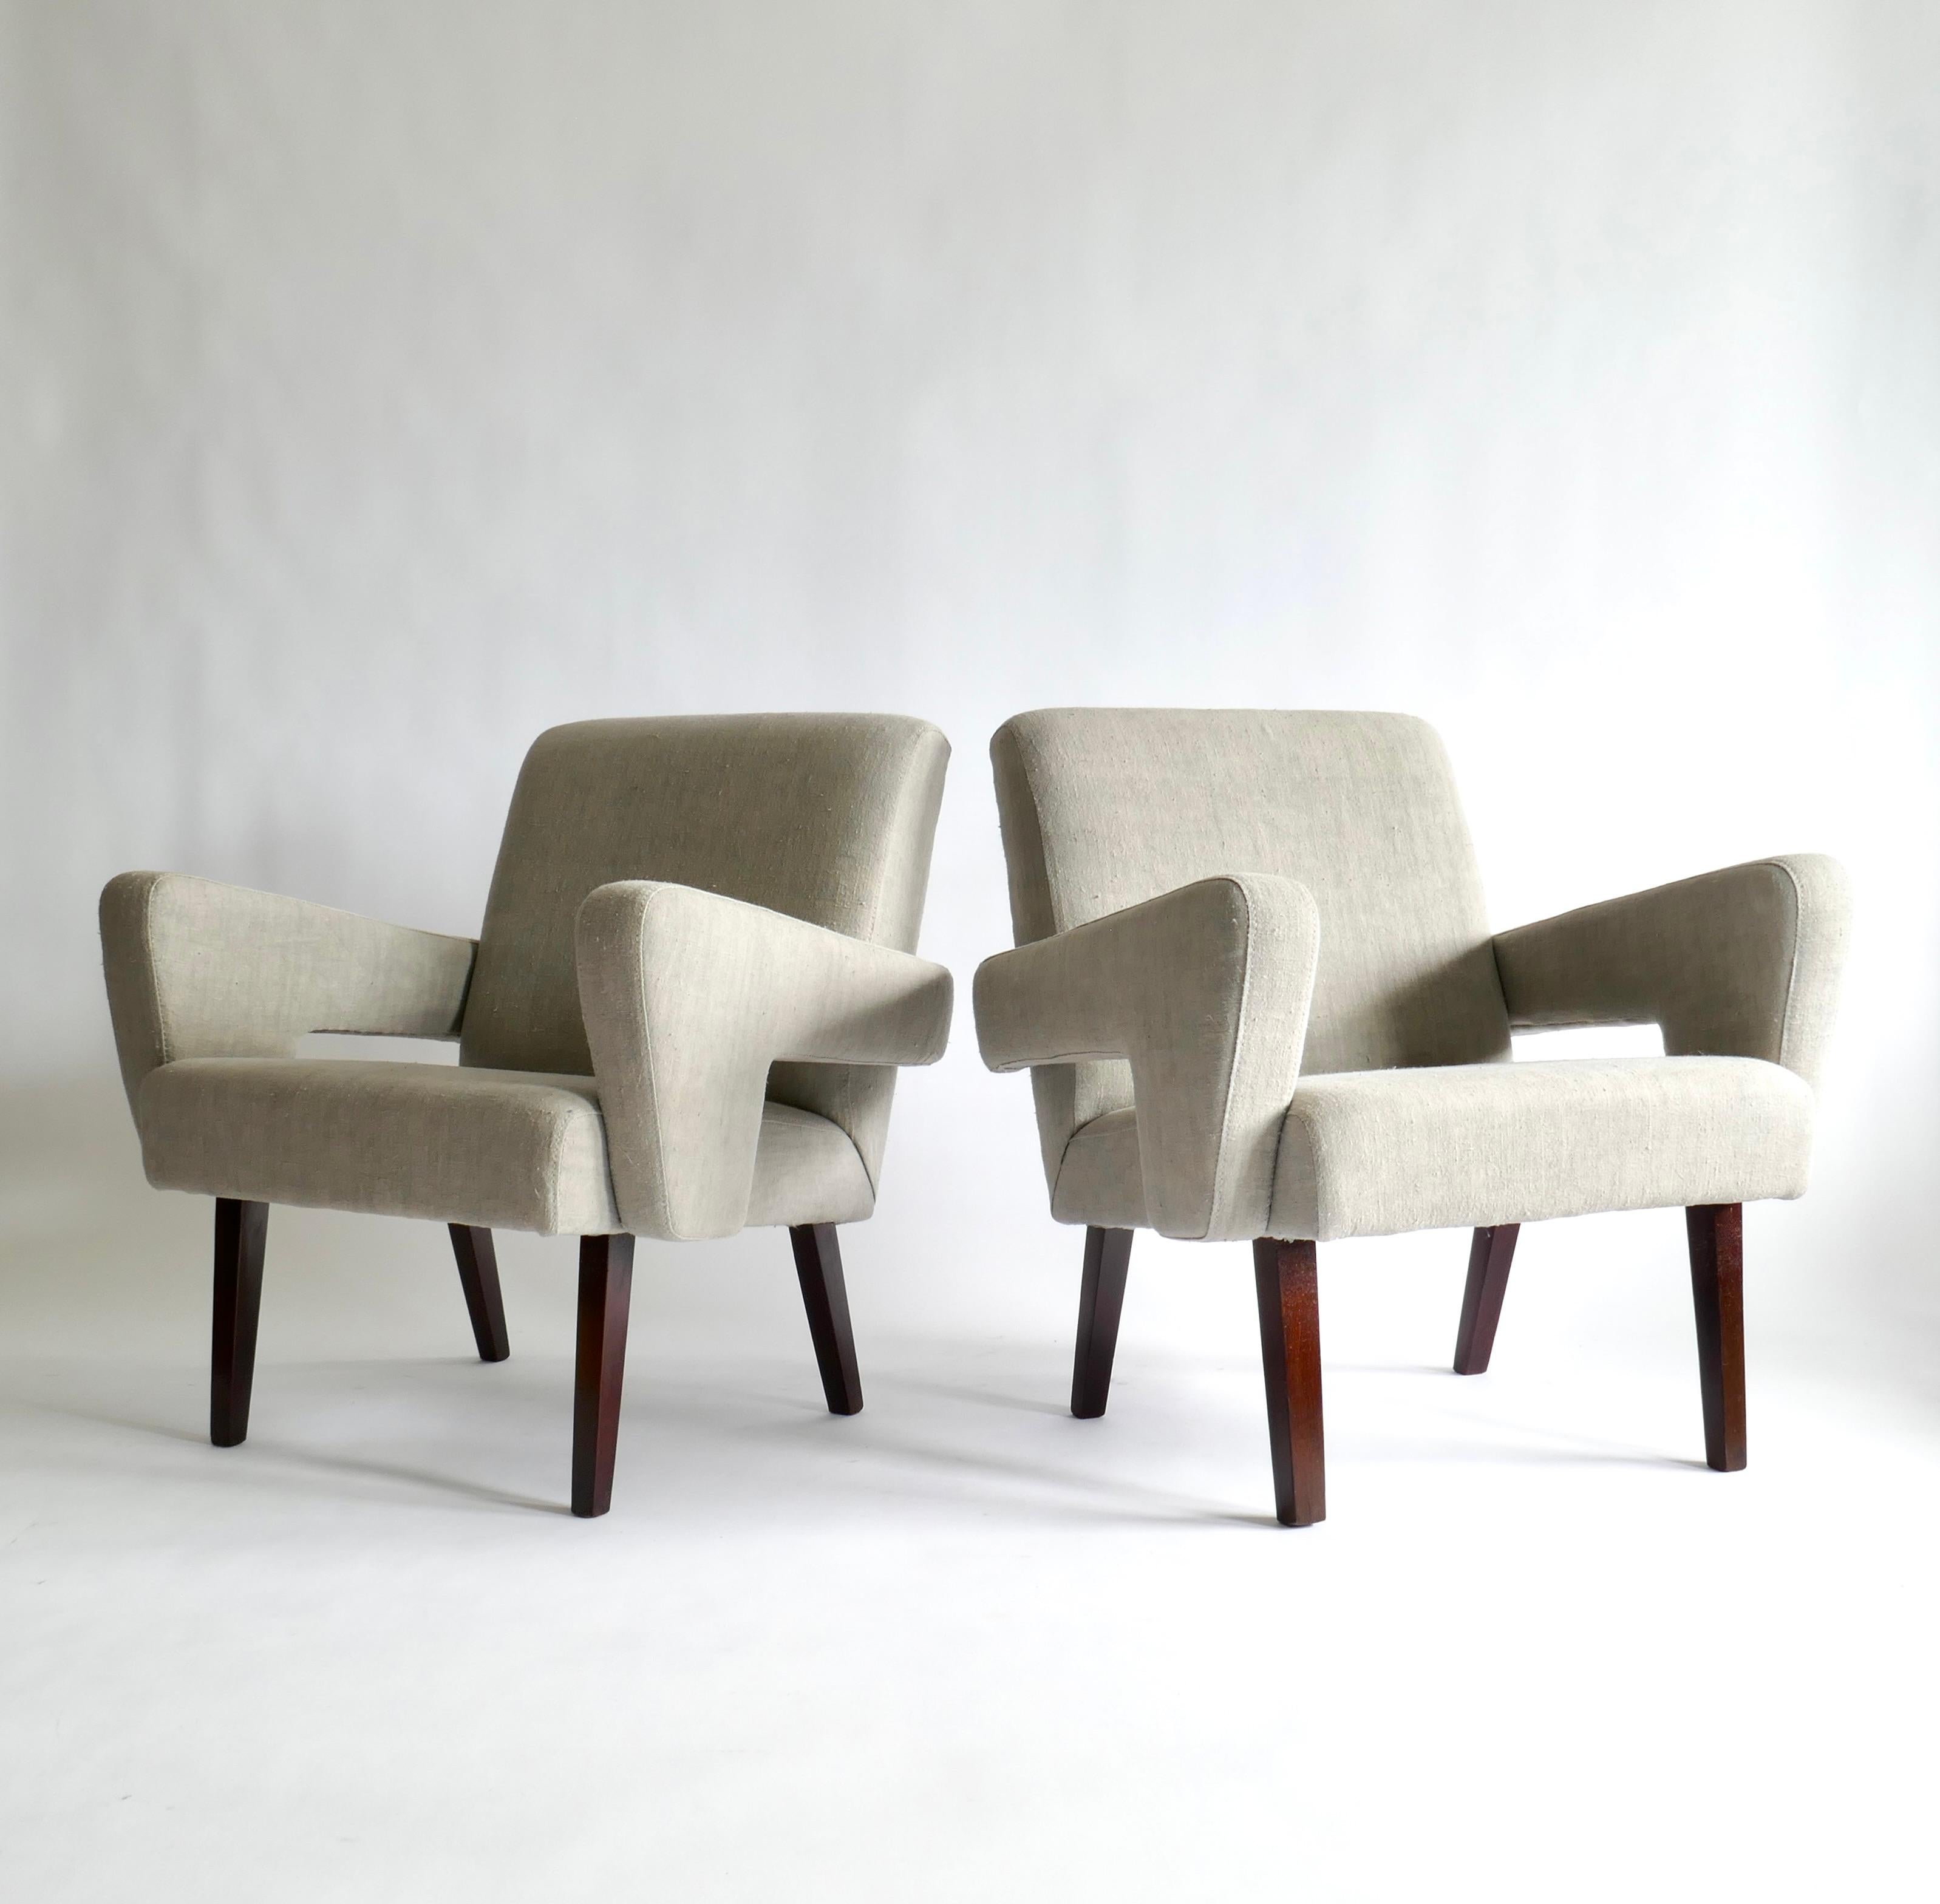 Der Brutalismus ist ein Stil, bei dem die Betonung auf Materialien, Texturen und Konstruktionen liegt, was zu sehr ausdrucksstarken Formen führt, wie bei diesem Sesselpaar mit quadratischen Formen. Gepolstert in einem schönen hellgrauen